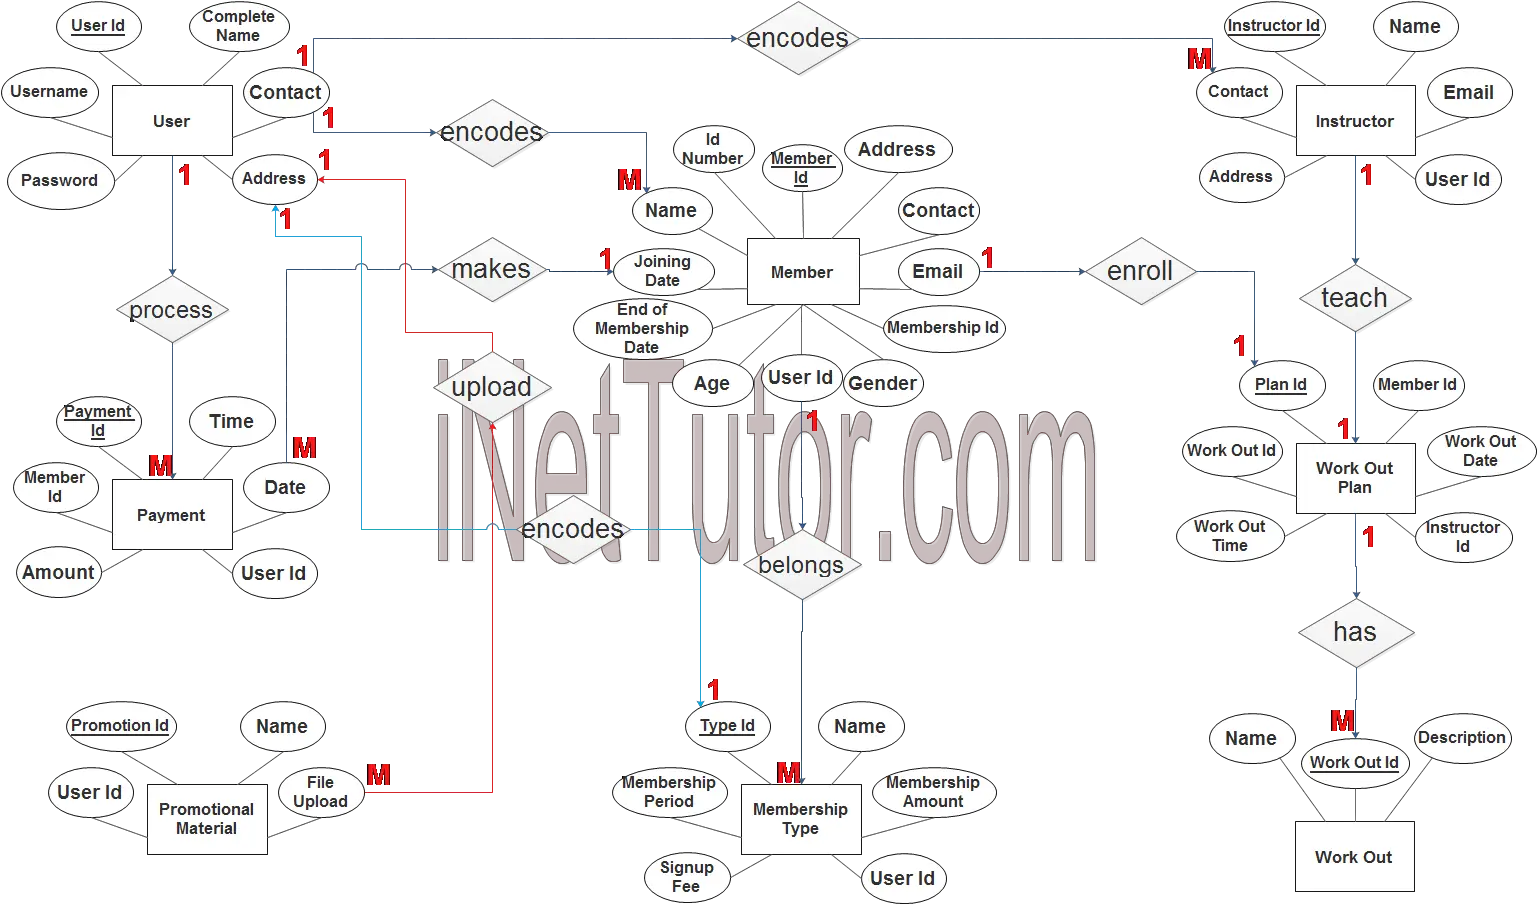 Gym Management System ER Diagram - Step 3 Complete ERD